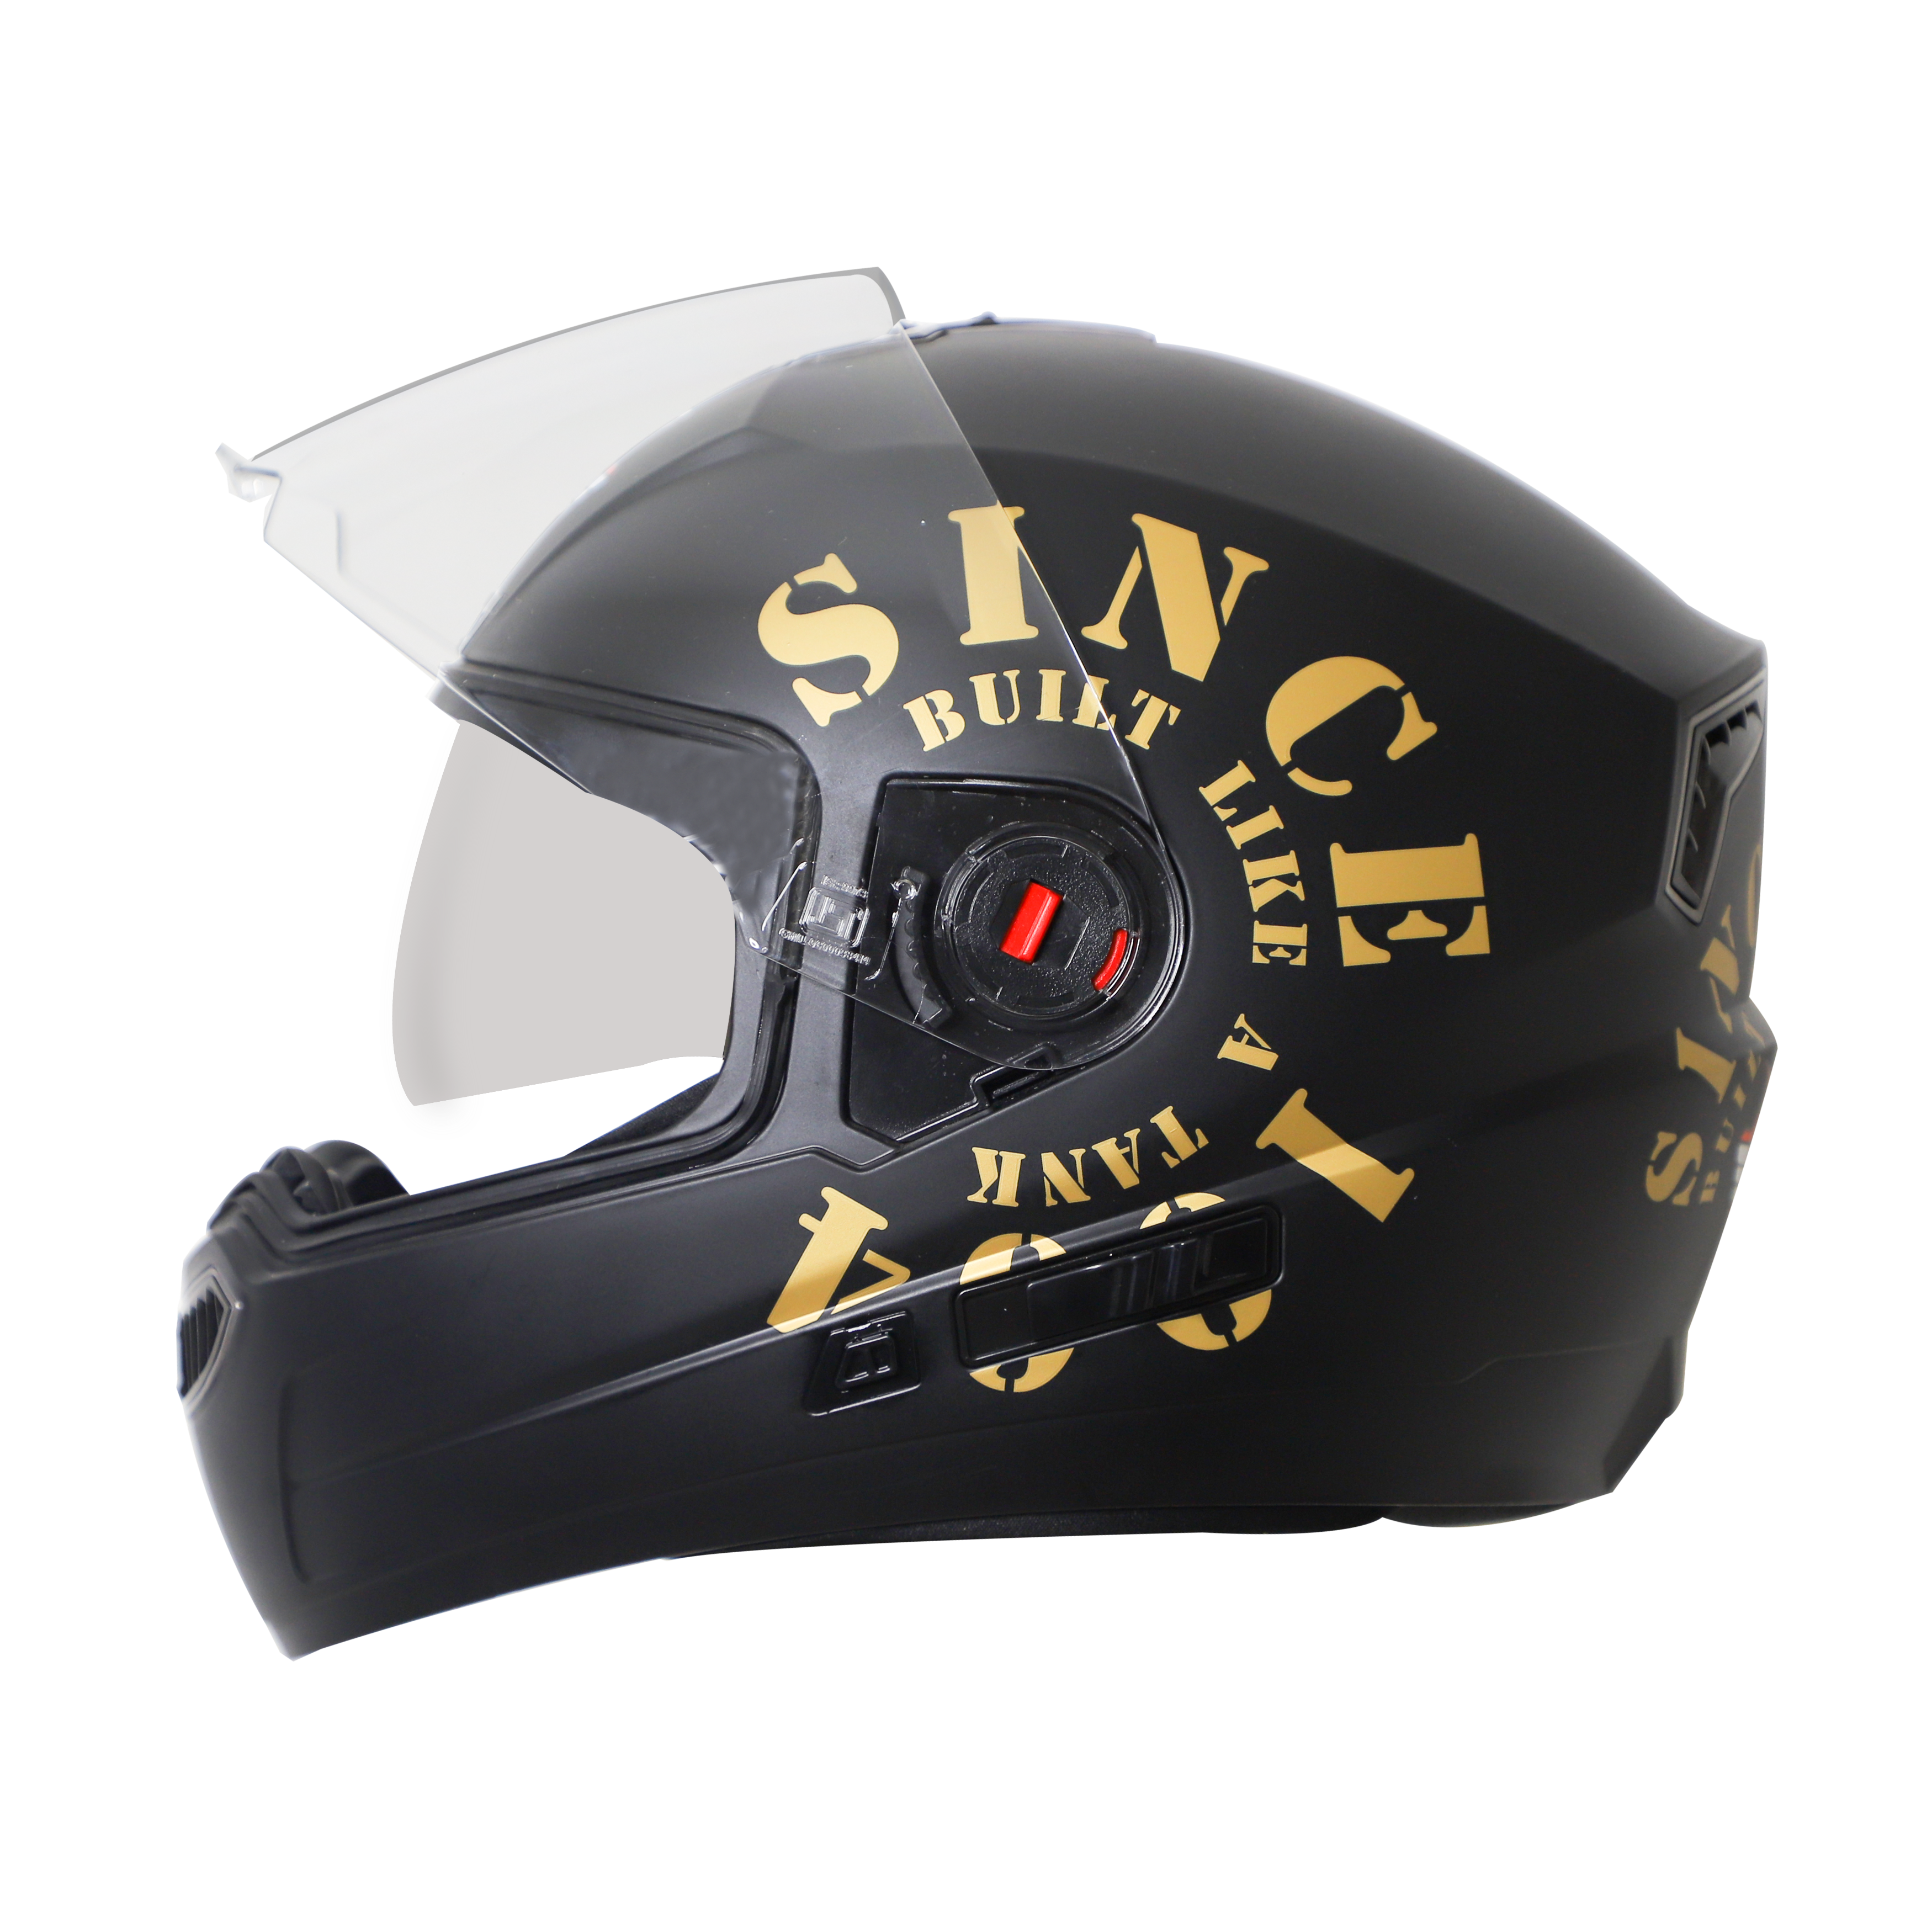 Steelbird SBA-1 Tank Double Visor Full Face Graphics Helmet, Inner Silver Sun Shield And Outer Clear Visor (Matt Black Gold)